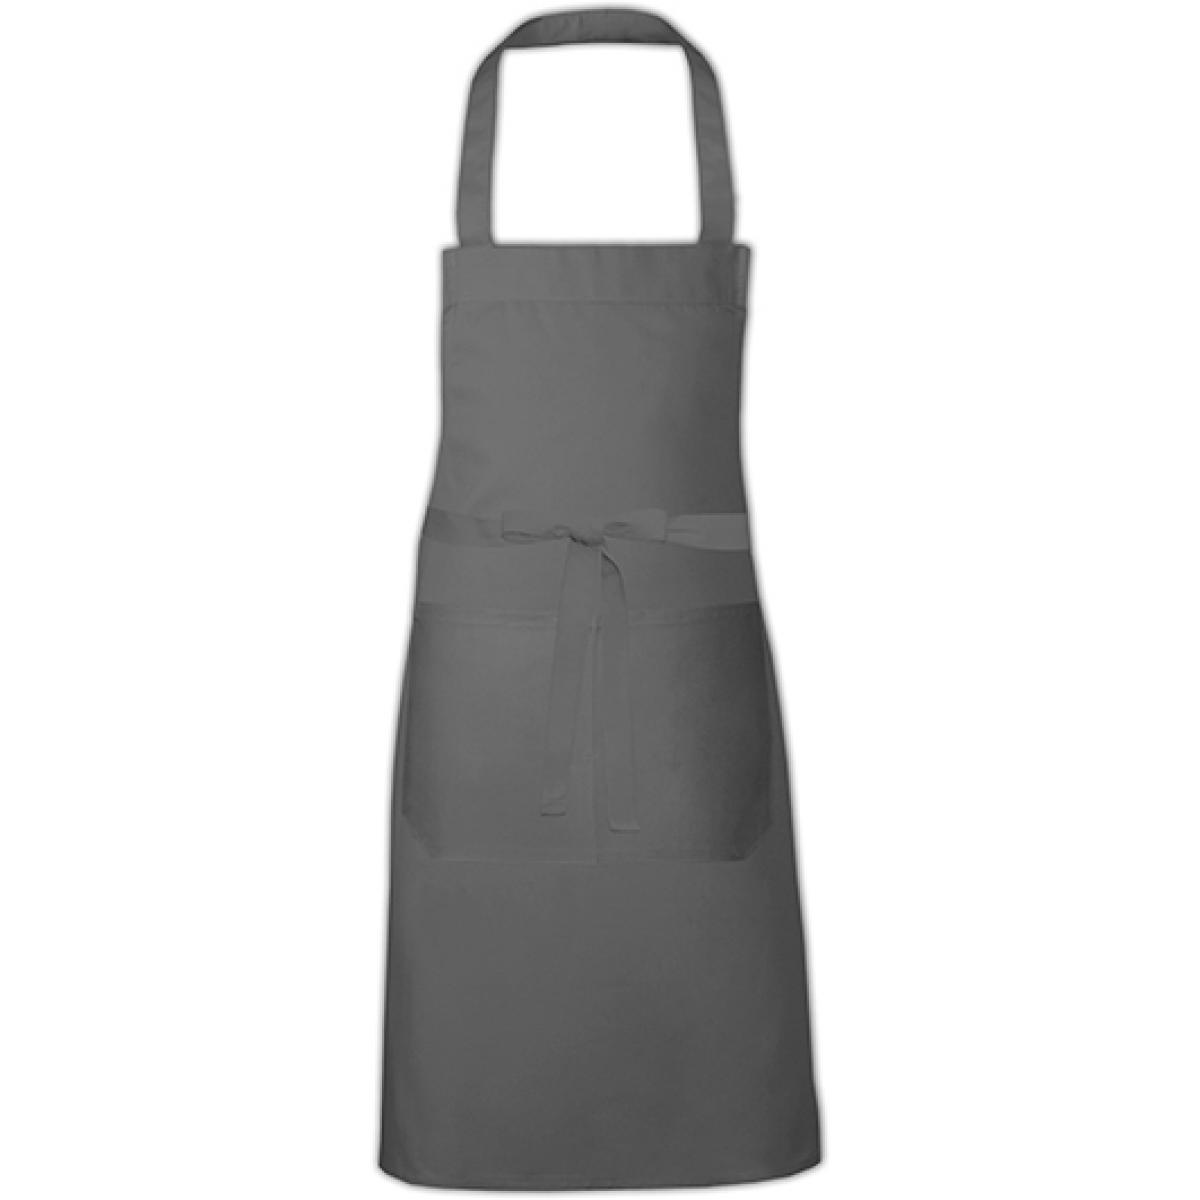 Hersteller: Link Kitchen Wear Herstellernummer: HS8073EU Artikelbezeichnung: Hobby Apron - EU Production - Kochschürze - Waschbar bis 60C Farbe: Dark Grey (ca. Pantone 431)